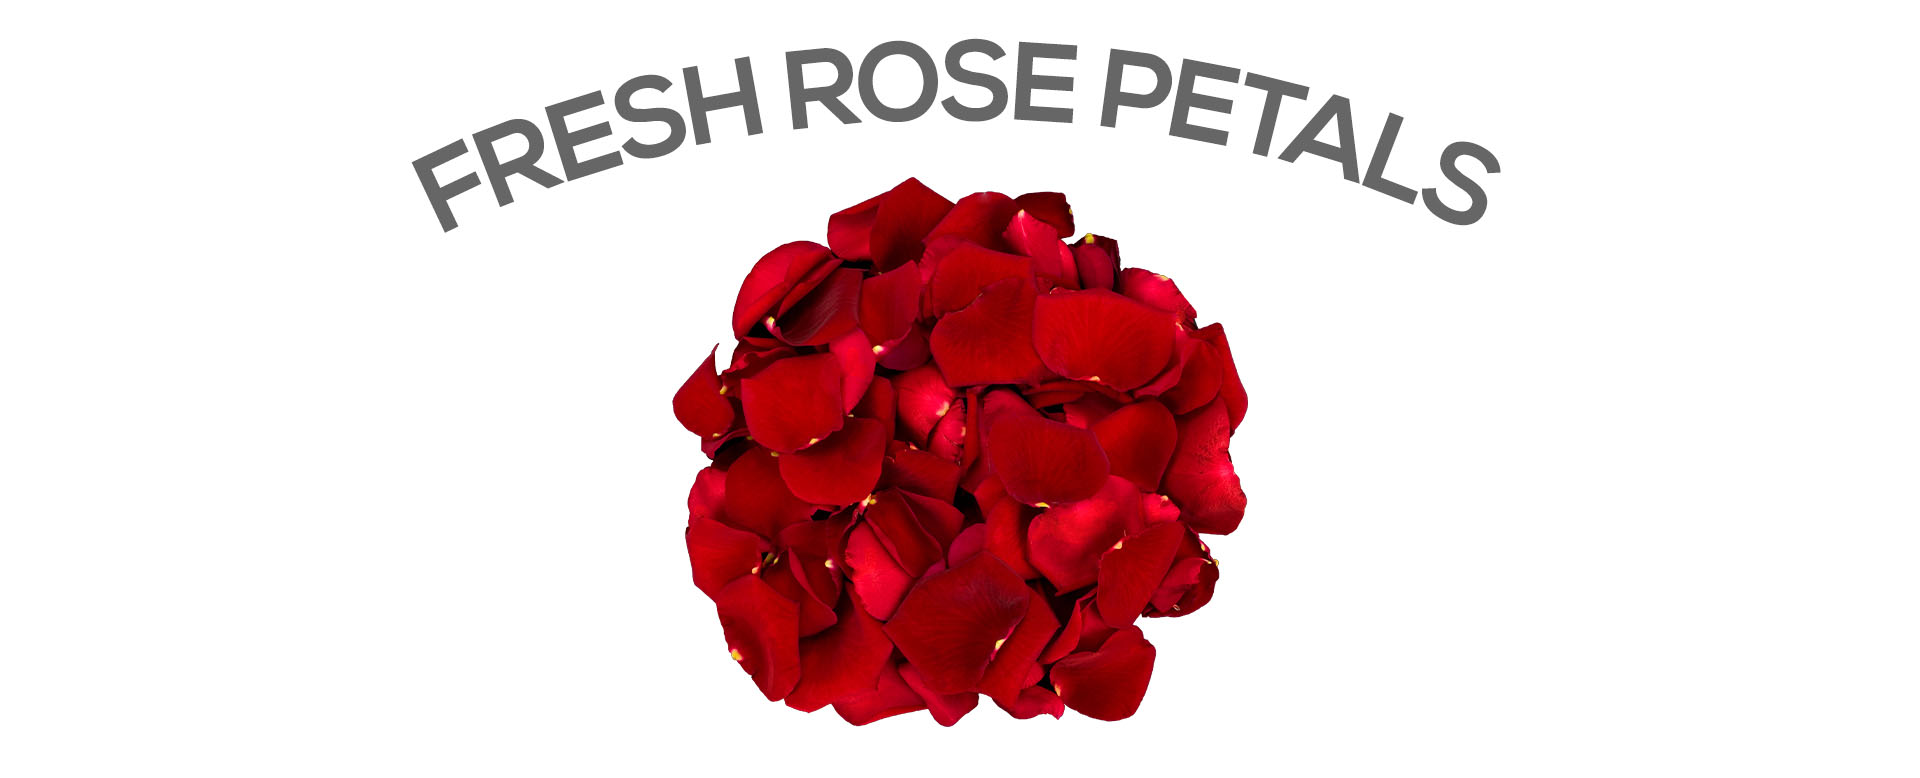 Send fresh rose petals